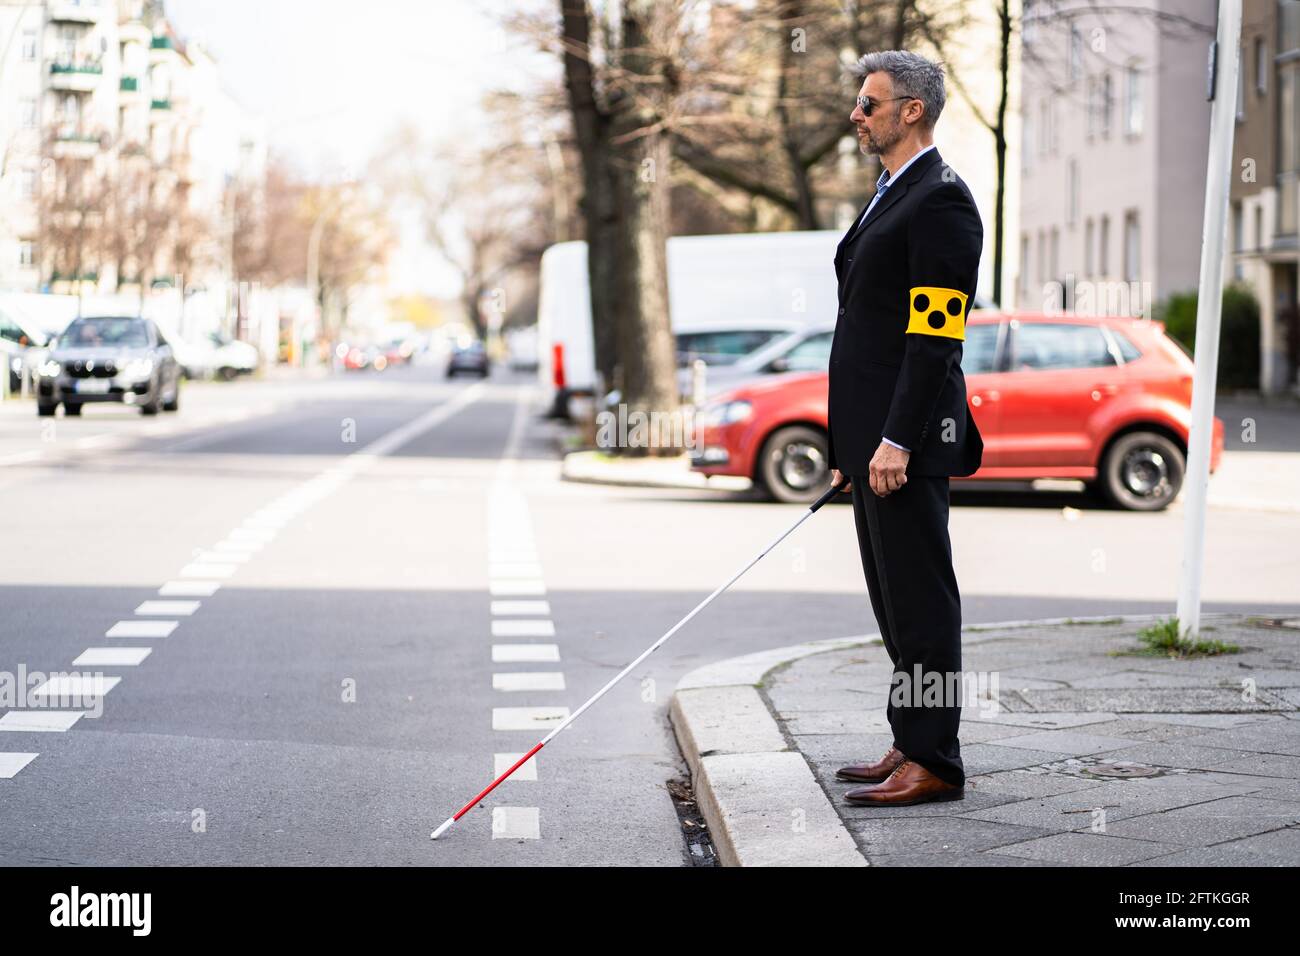 Blinden Mann zu Fuß auf dem Bürgersteig Holding Stick mit Armband  Stockfotografie - Alamy